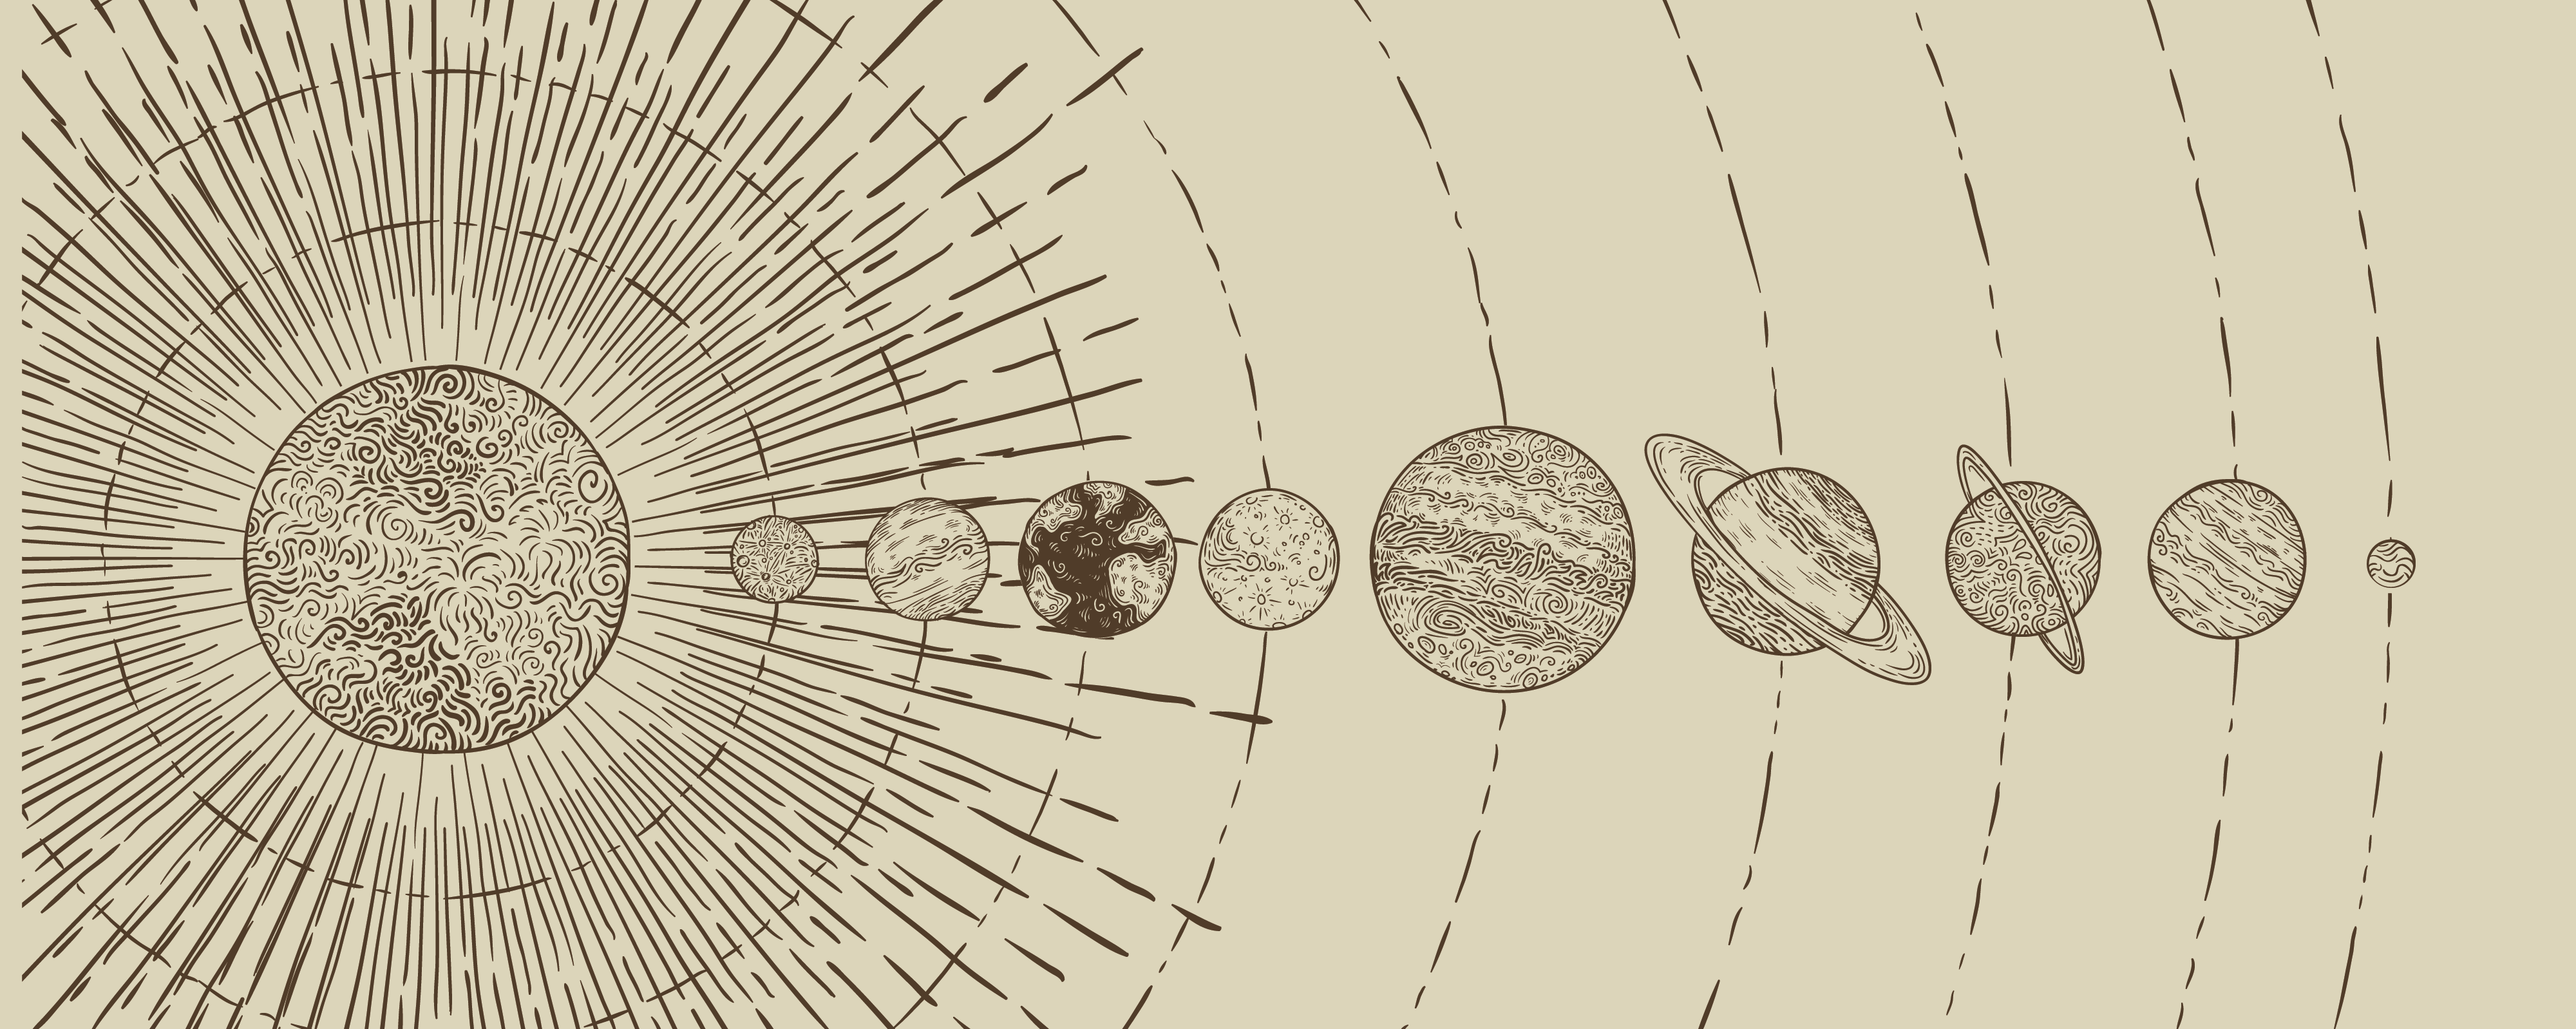 Схема солнечной системы планеты: Макет Солнечной системы, планет и спутников на HTML5